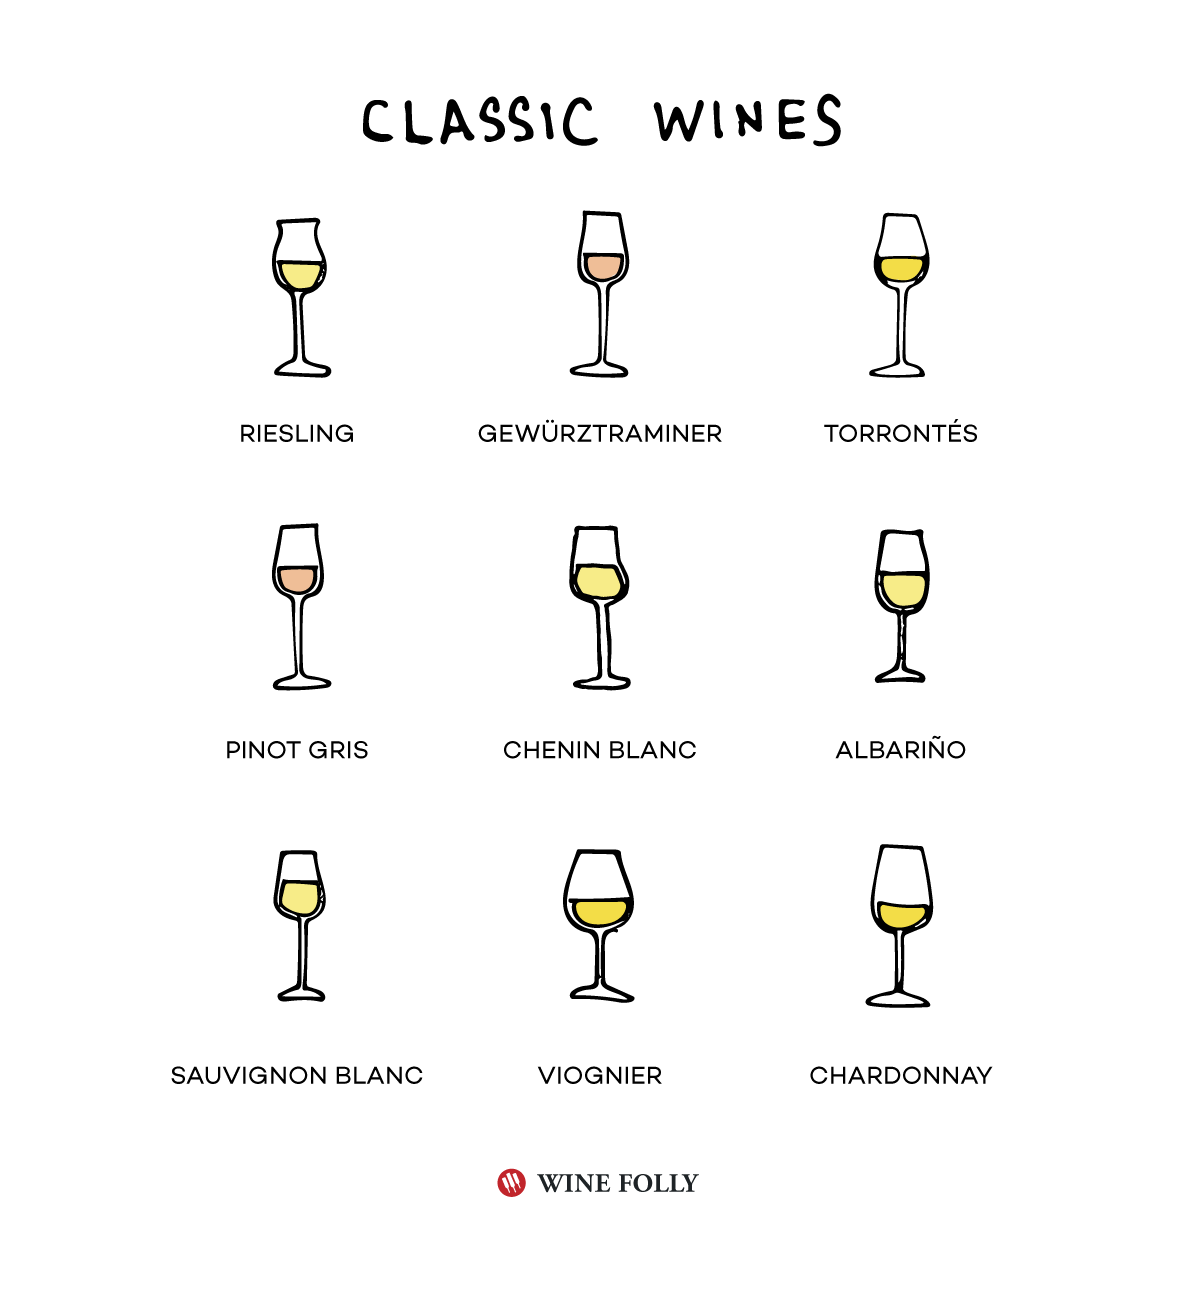 רשימת יינות לבנים קלאסיים בסיסיים לדעת ולנסות - איור מאת Wine Folly